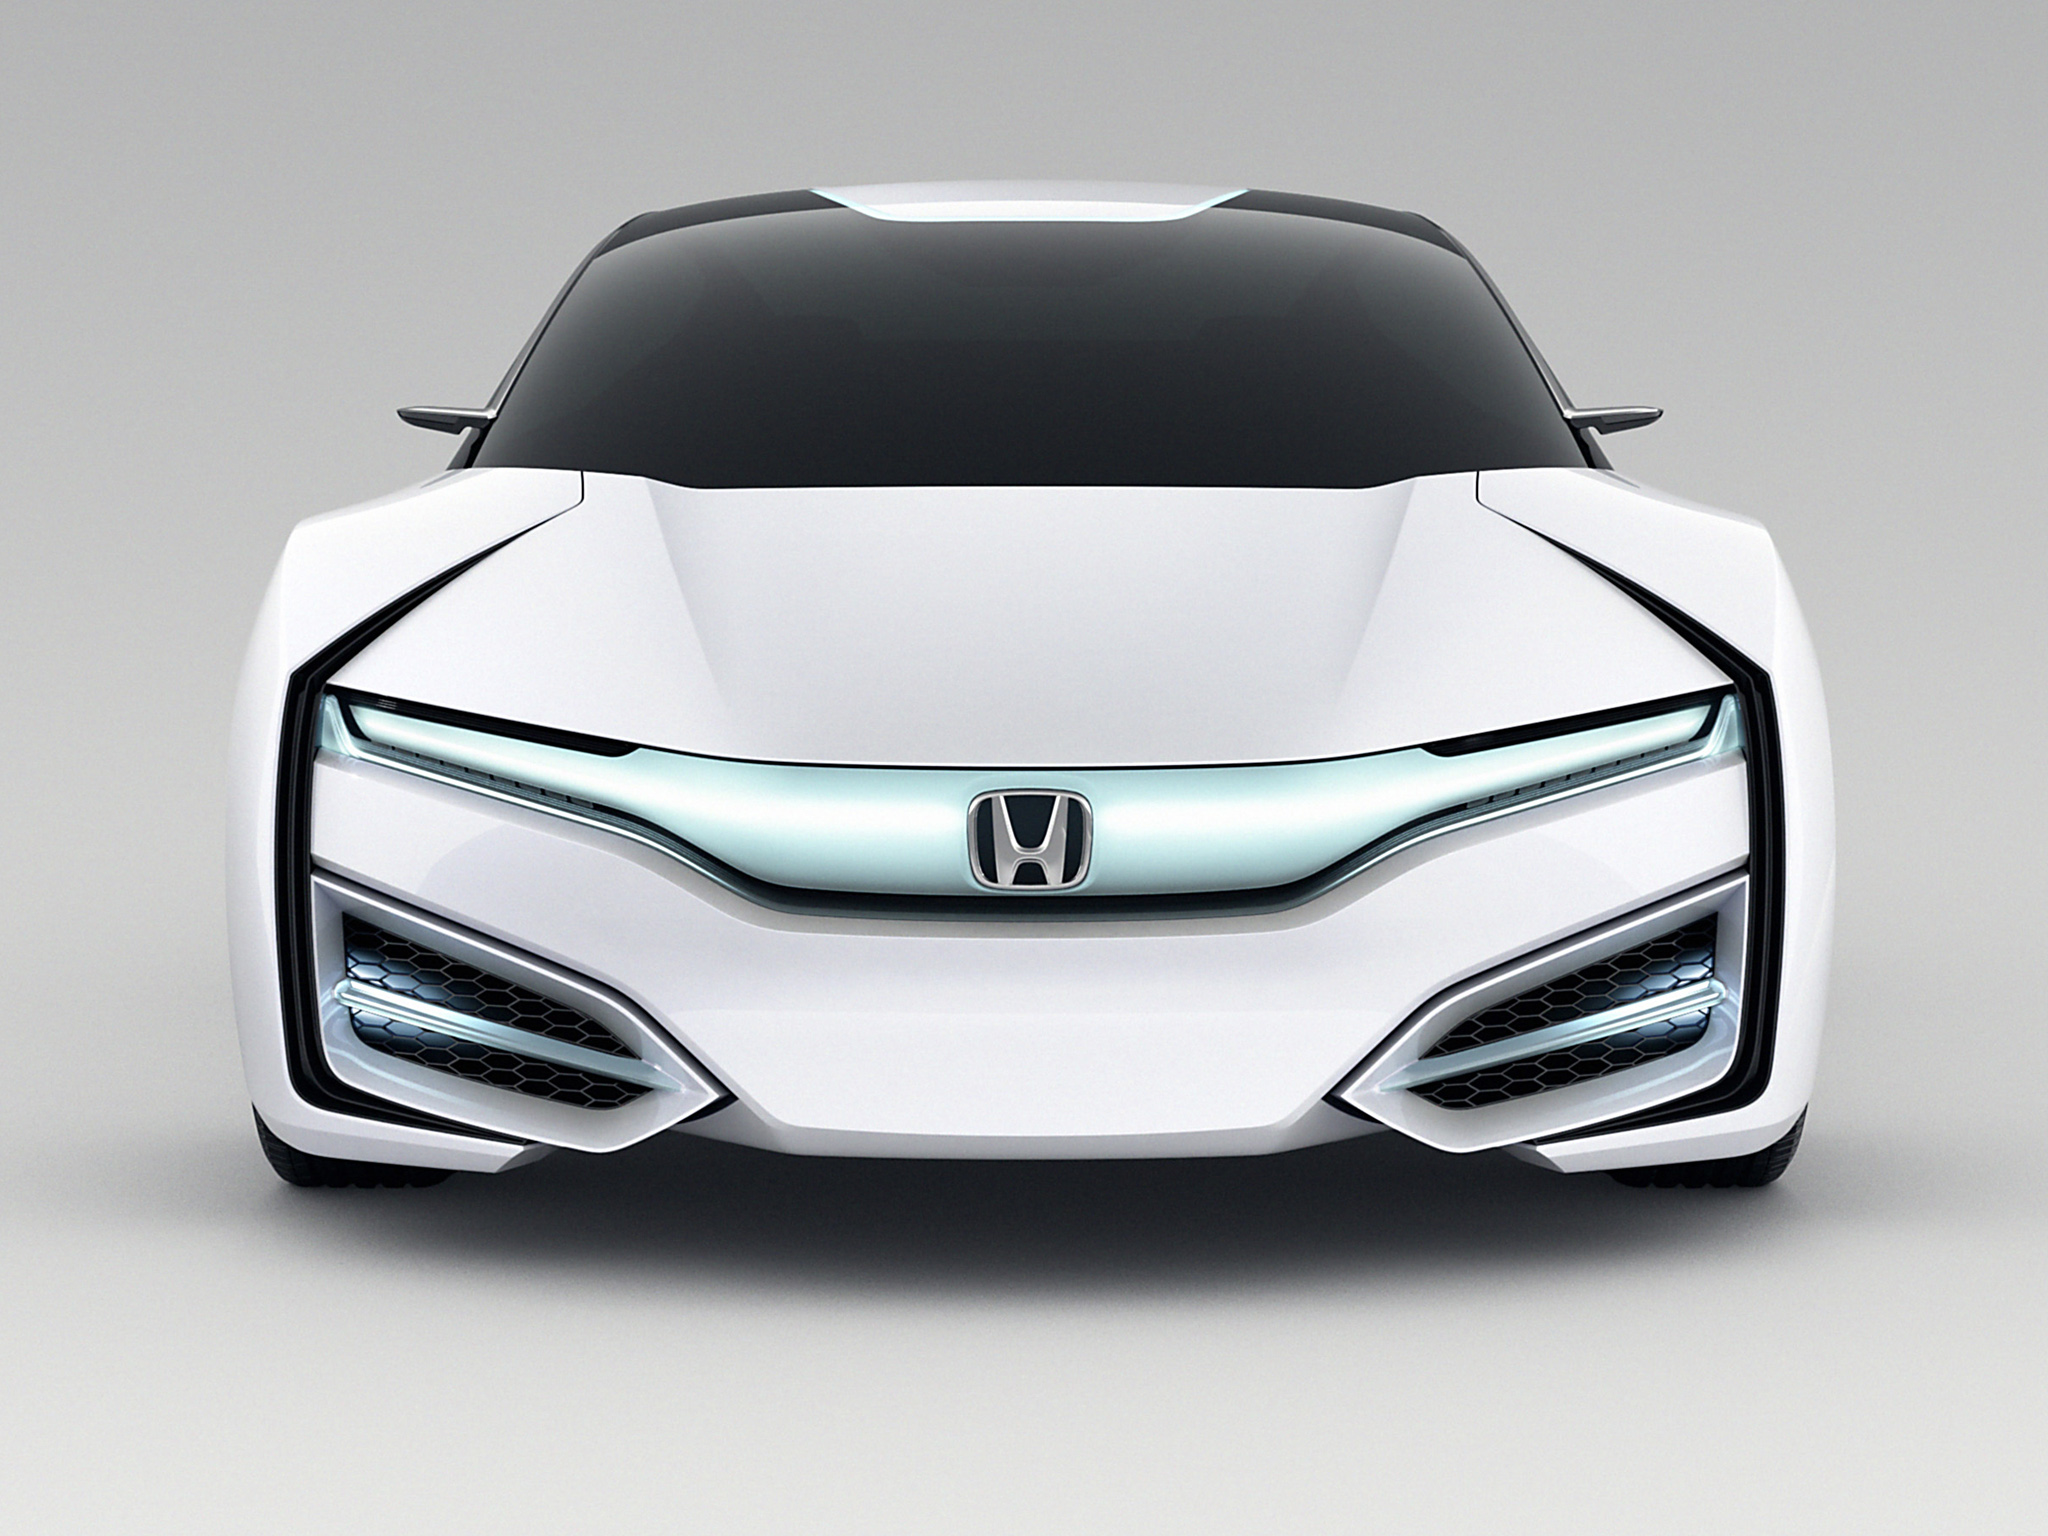 2013, Honda, Fcev, Concept Wallpaper